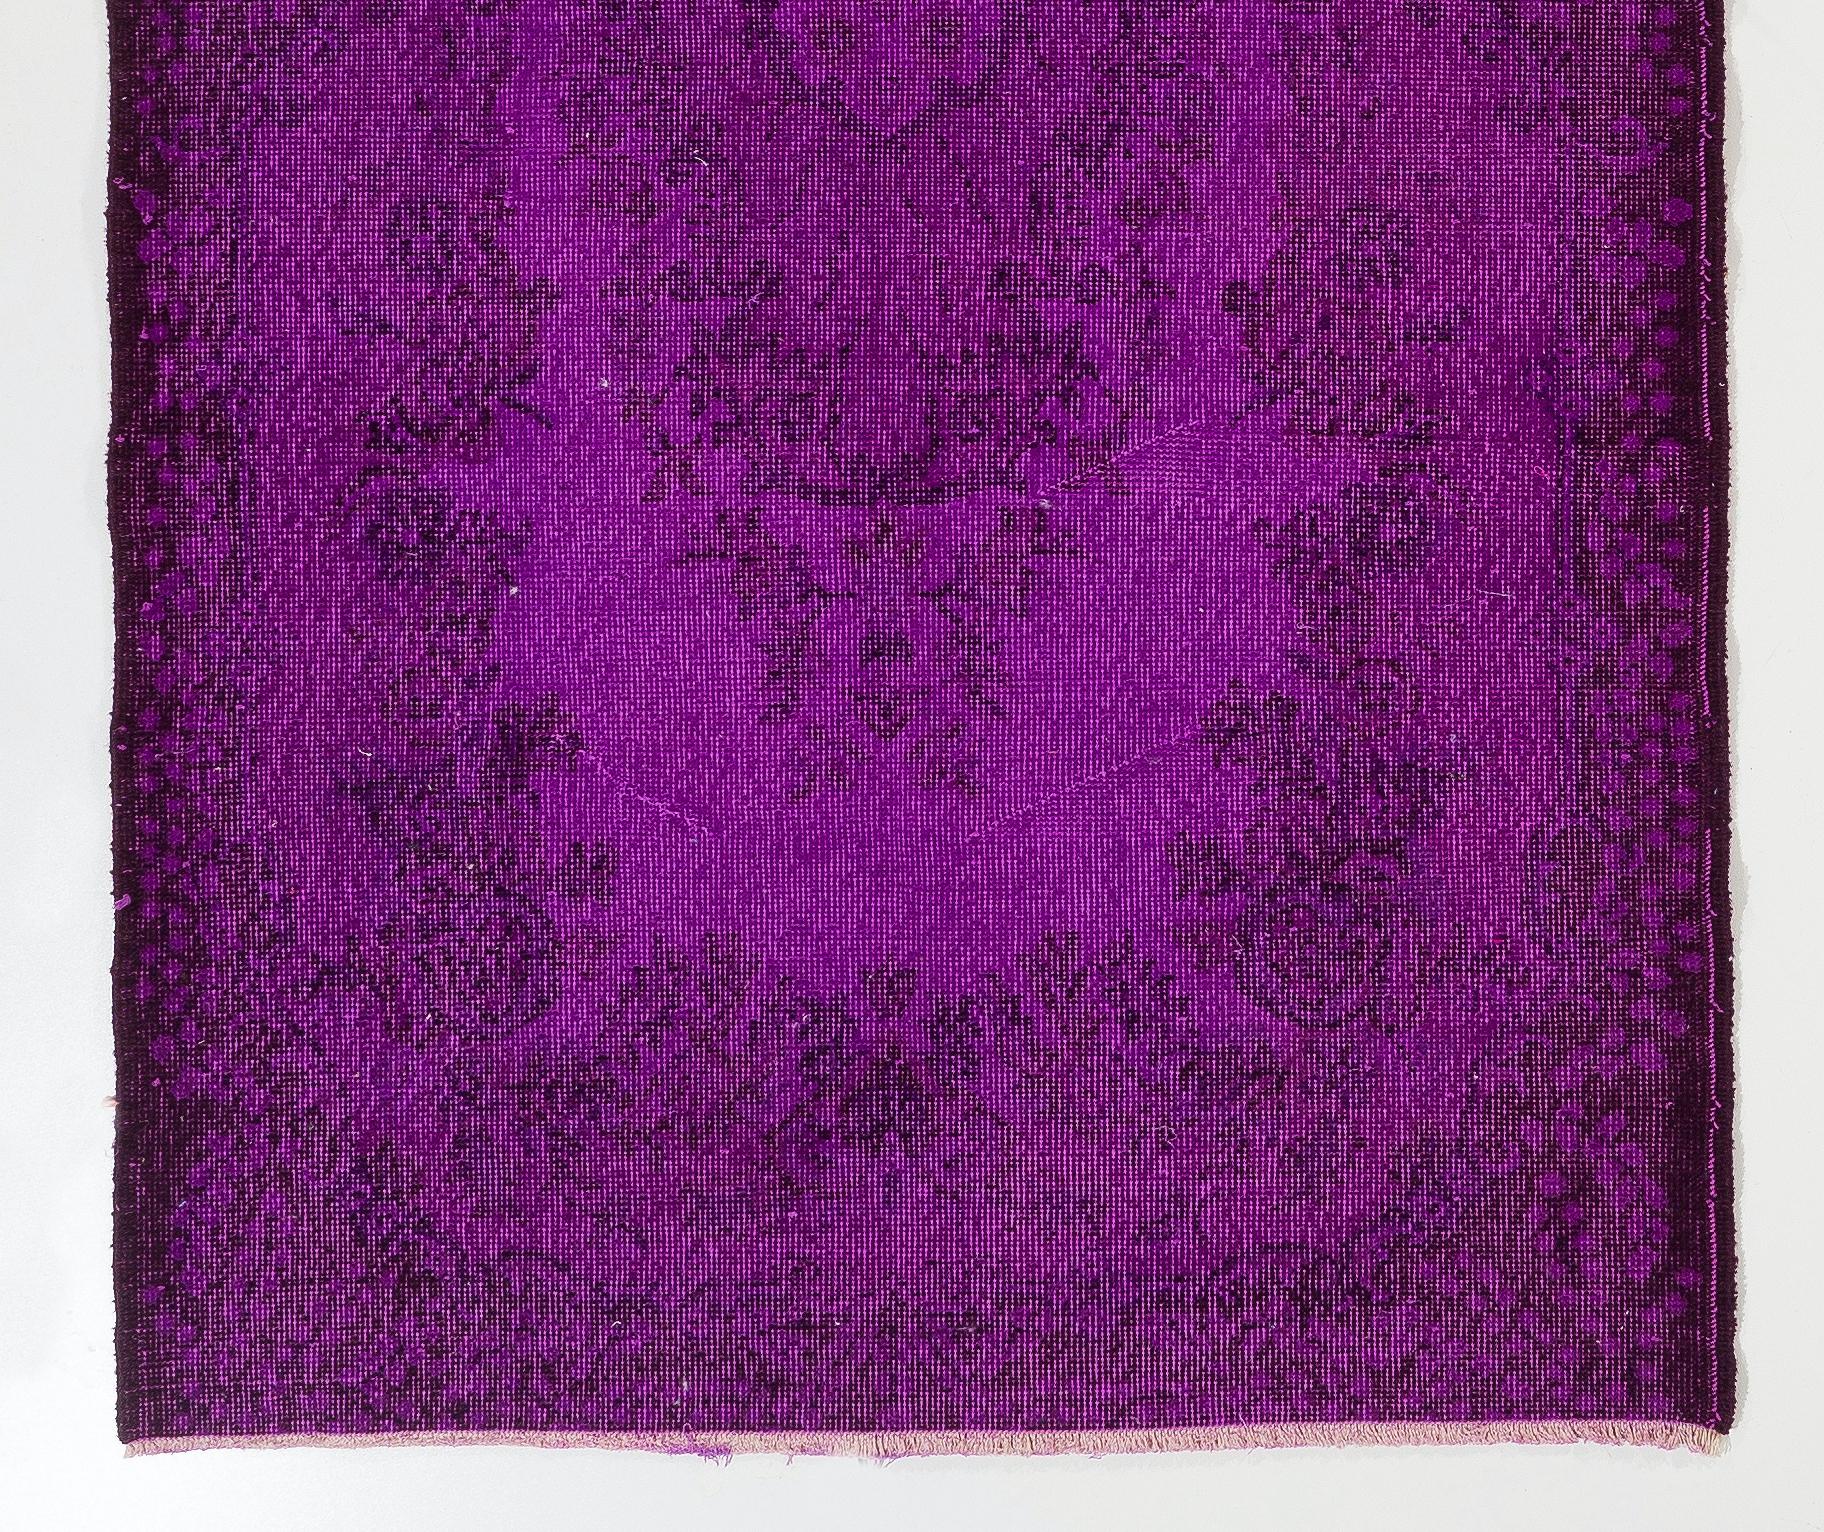 Ein türkischer Akzentteppich im Vintage-Stil, lila überfärbt. Der Teppich ist fein handgeknüpft, hat einen niedrigen Wollflor auf Baumwollgrund. Er ist in sehr gutem Zustand, professionell gewaschen, robust und für stark begangene Flächen geeignet.